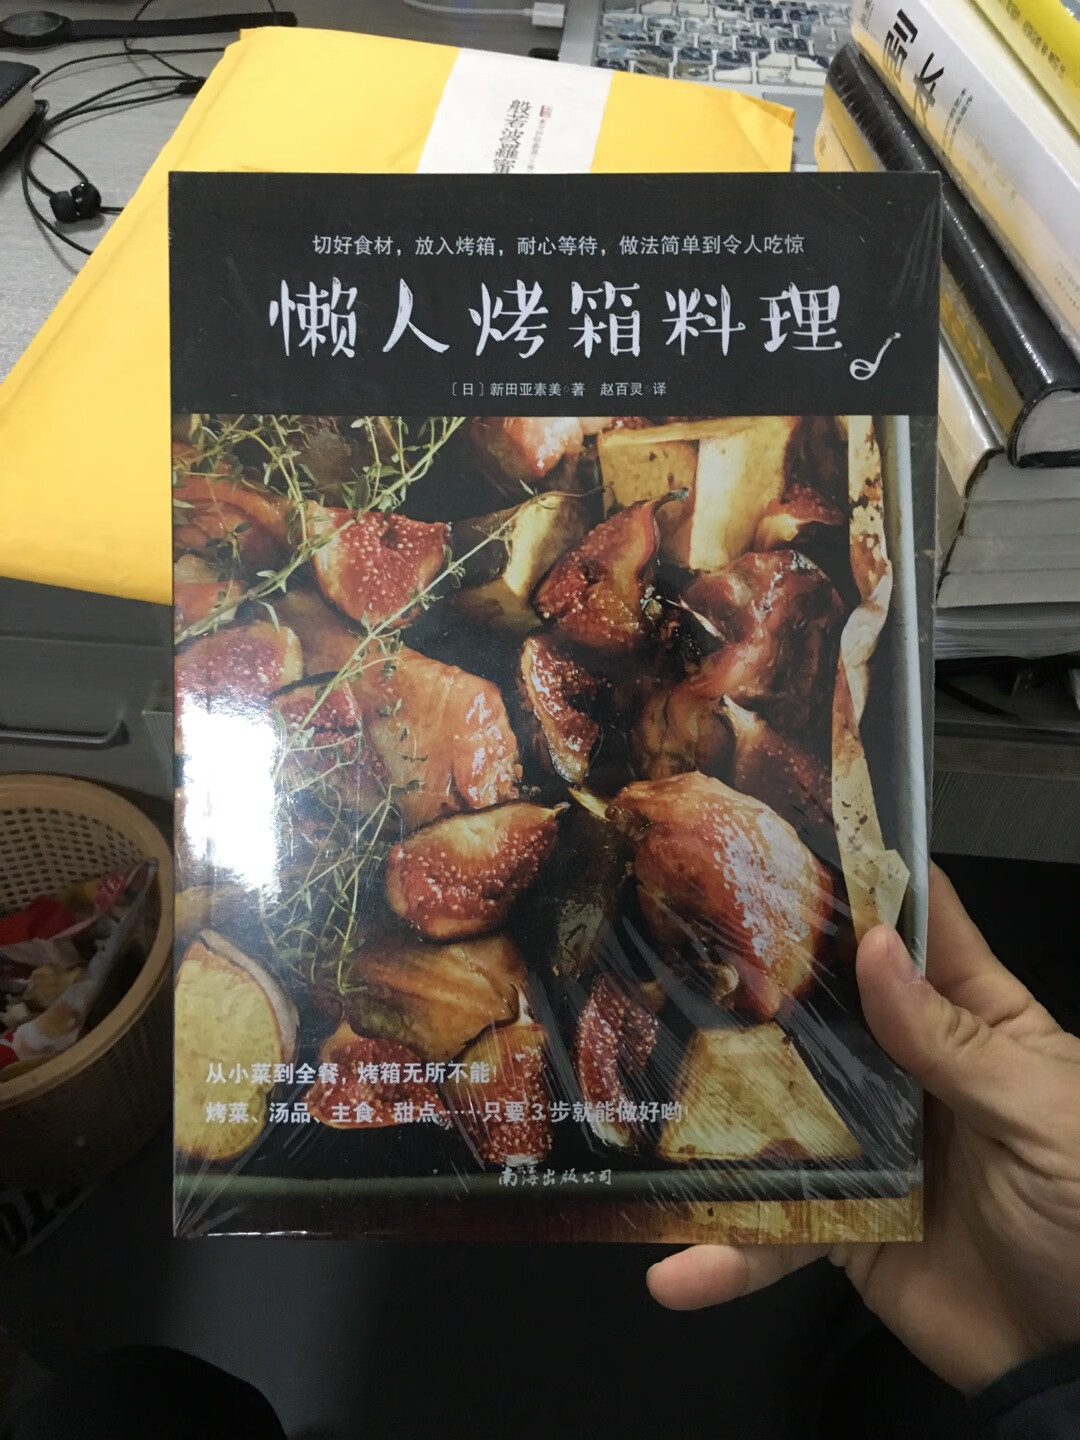 很懒但是又很想做饭，只能买来这本书自我学习，慢慢参考。希望能做出一手好菜！！！